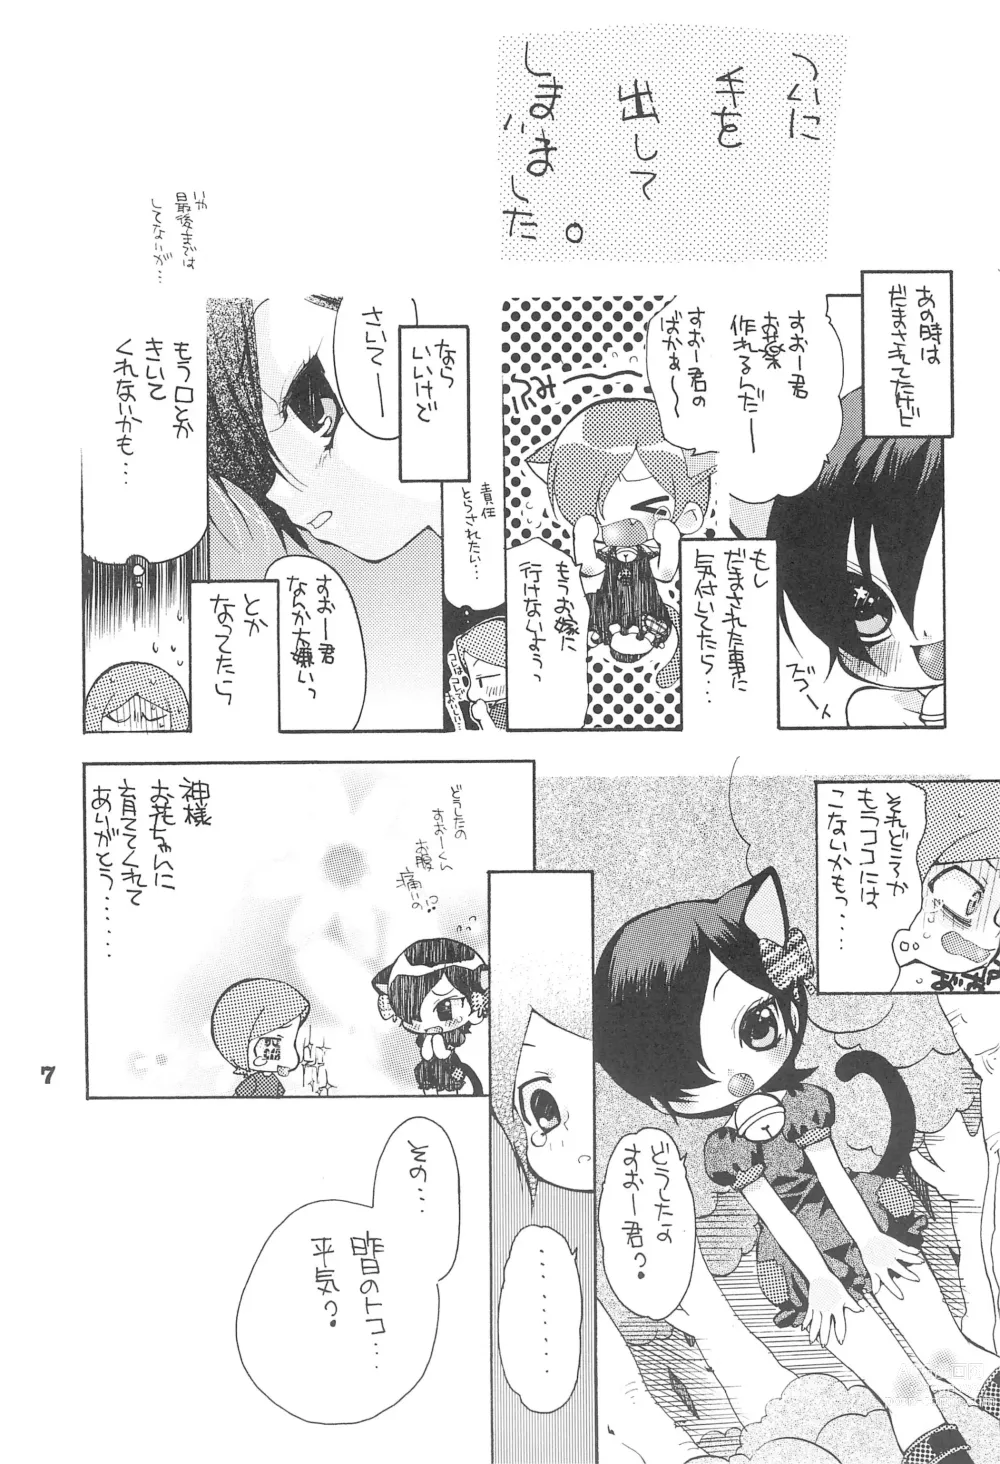 Page 9 of doujinshi Yuuyake Nyan nyan